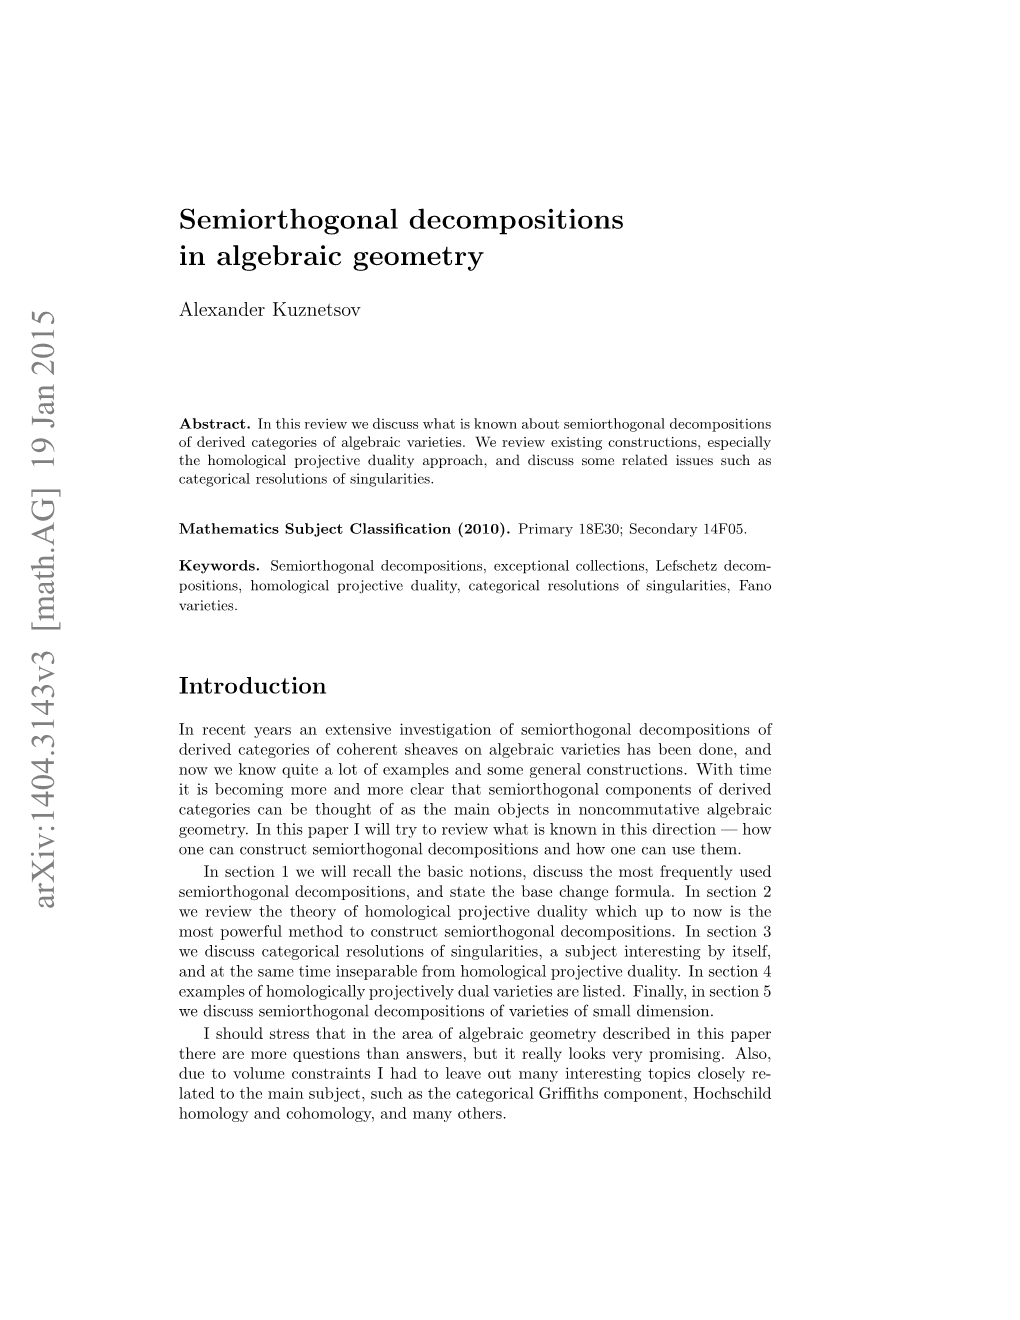 Semiorthogonal Decompositions in Algebraic Geometry